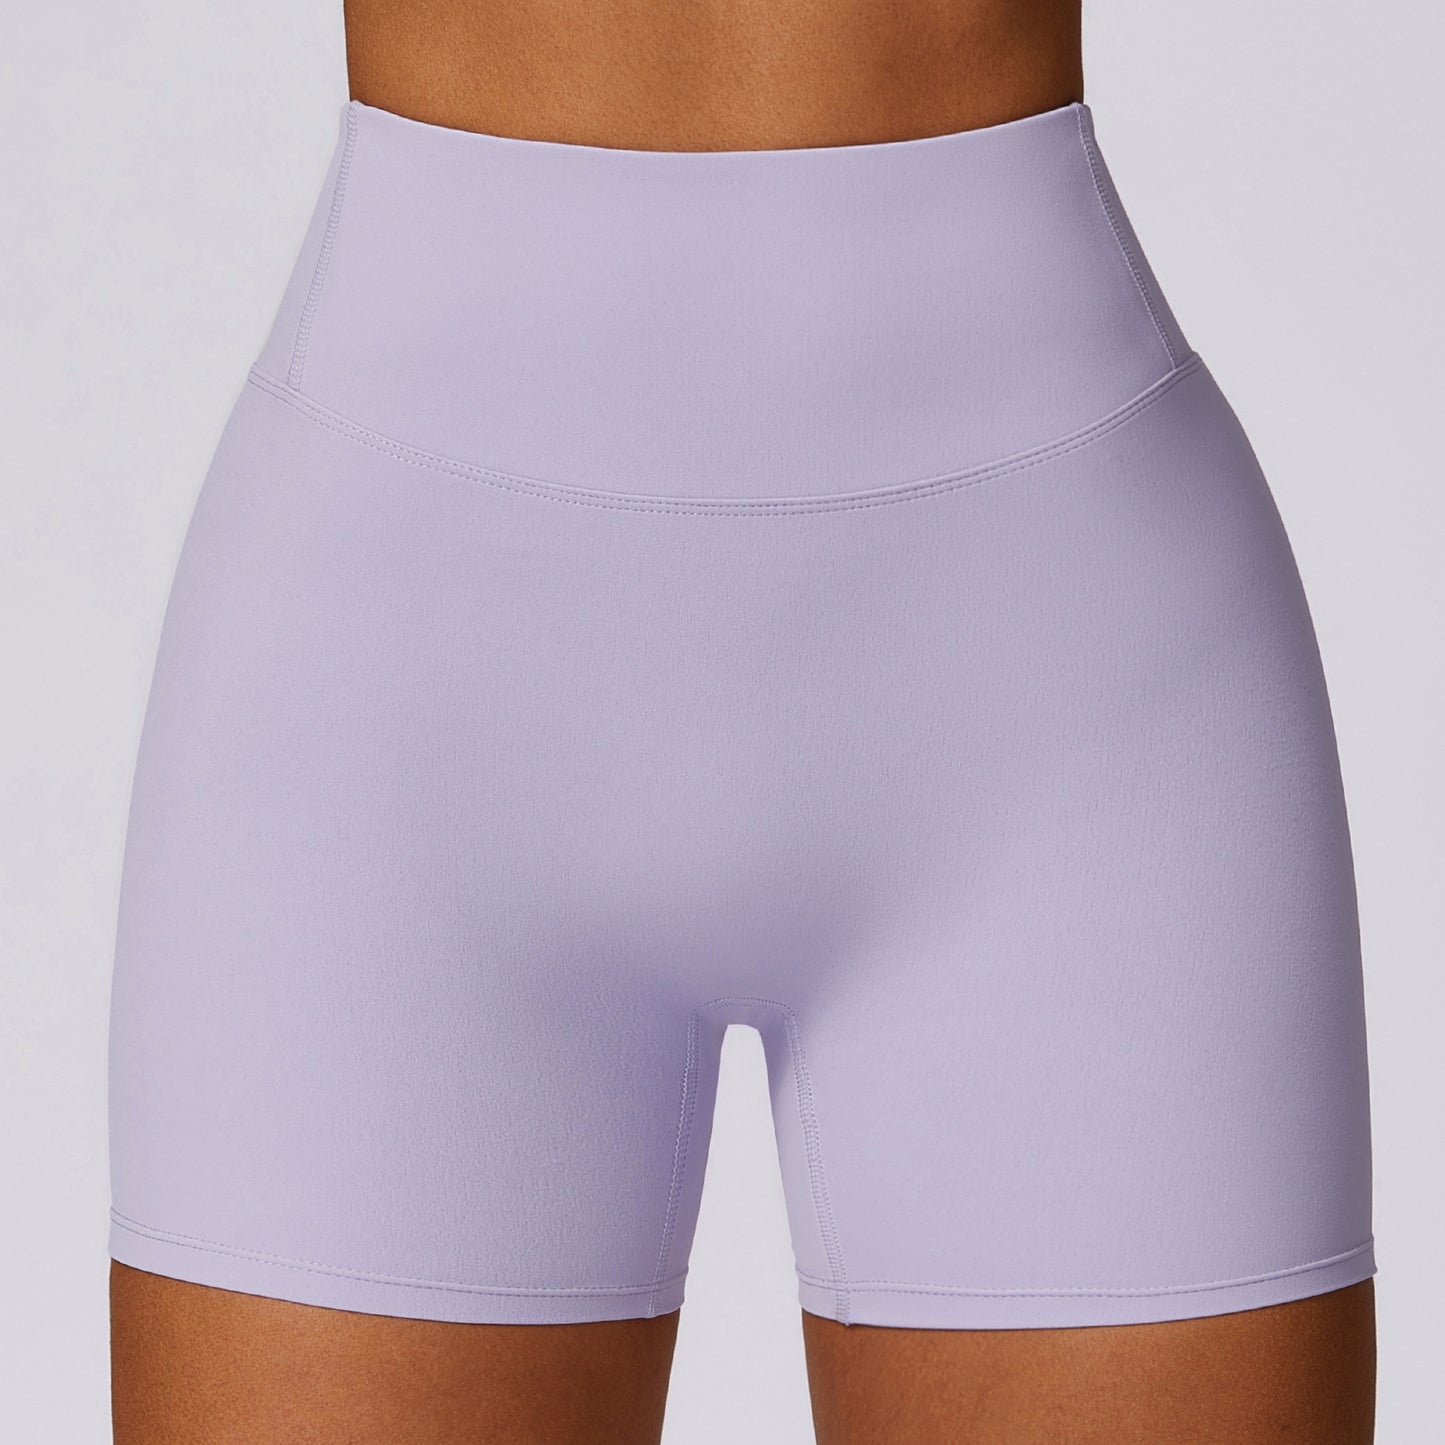 02/2024 Yoga pants women's high waist hip lifting sports shorts women's outerwear running fitness shorts BDK8047